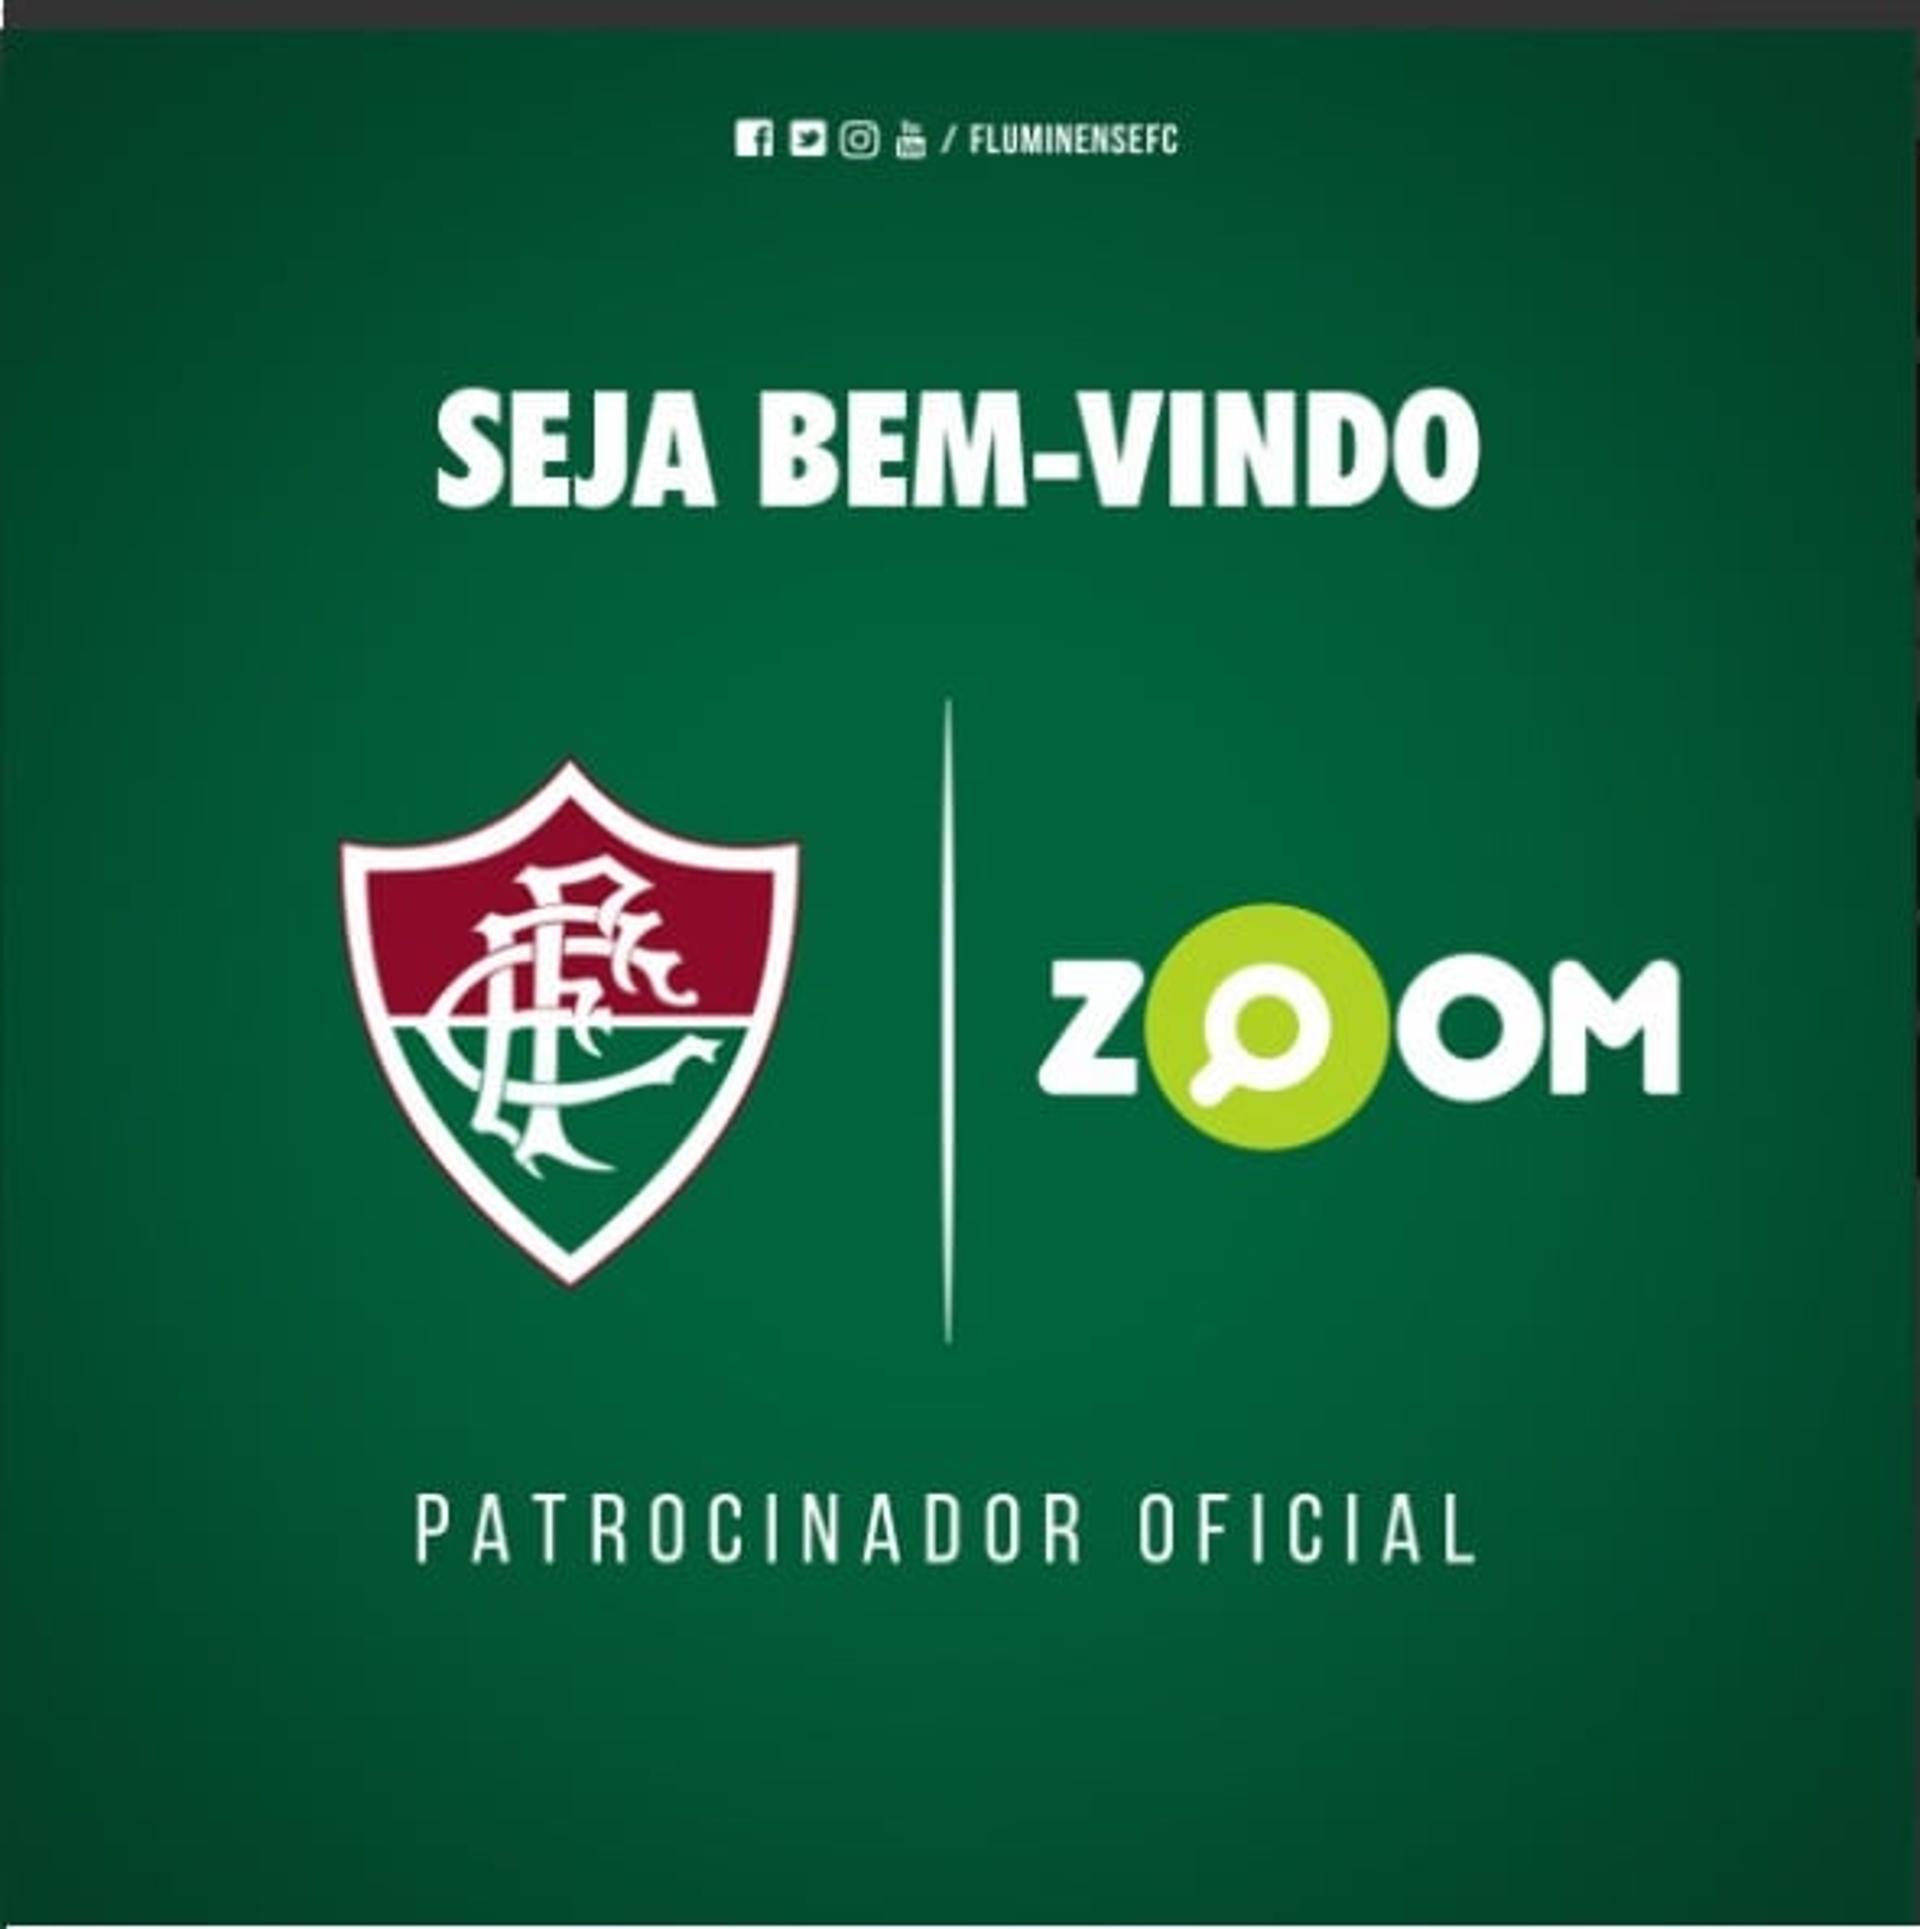 Zoom é o novo patrocinador do Fluminense